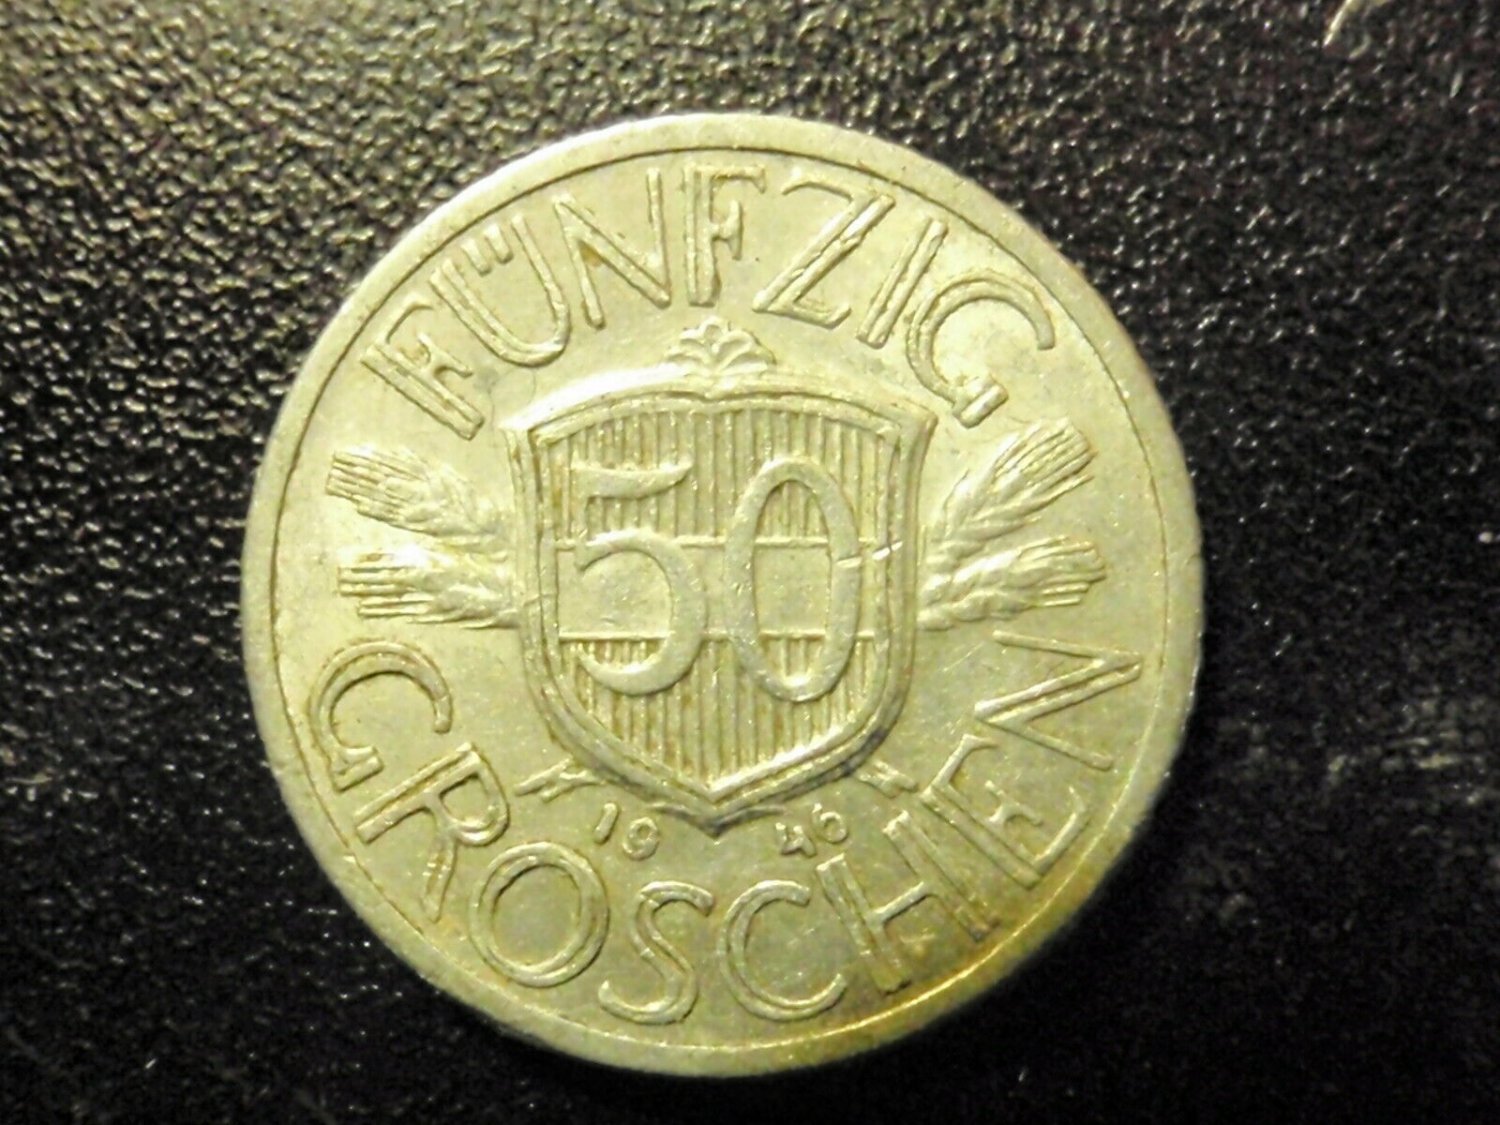 Coin AUSTRIA  50 Gr 1946 KM 2870  VG